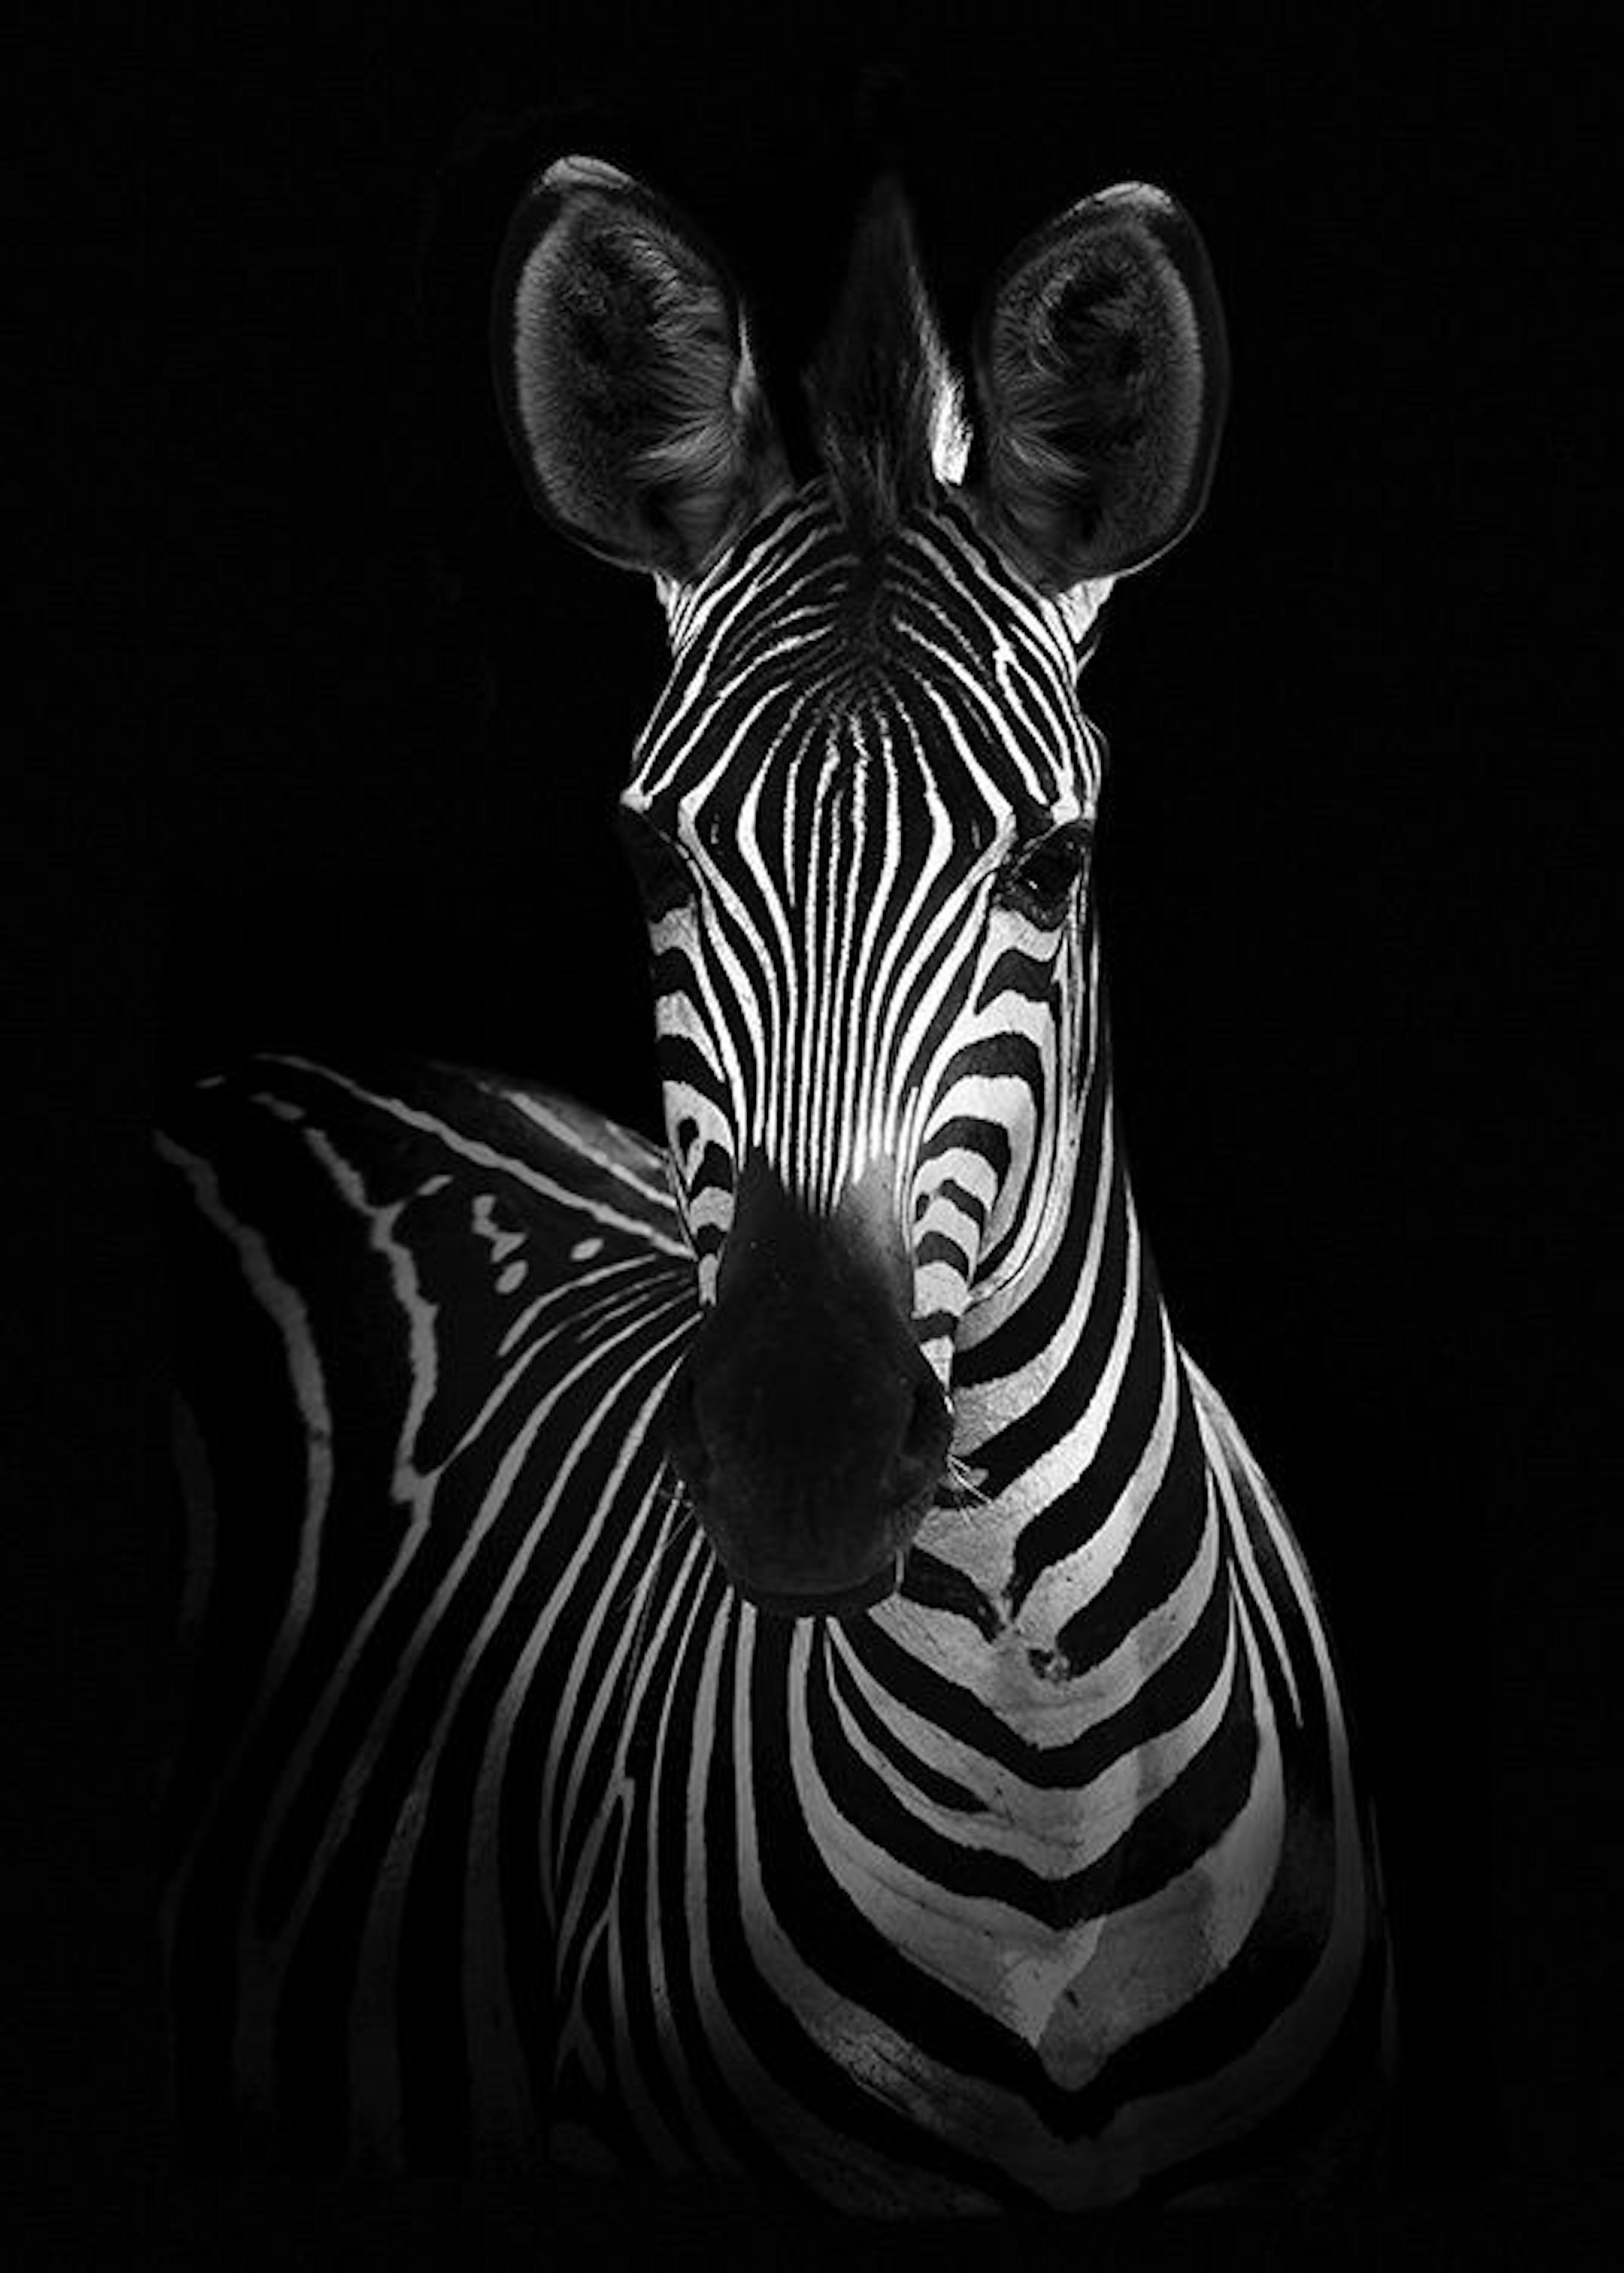 Zebra on Black Poster 0